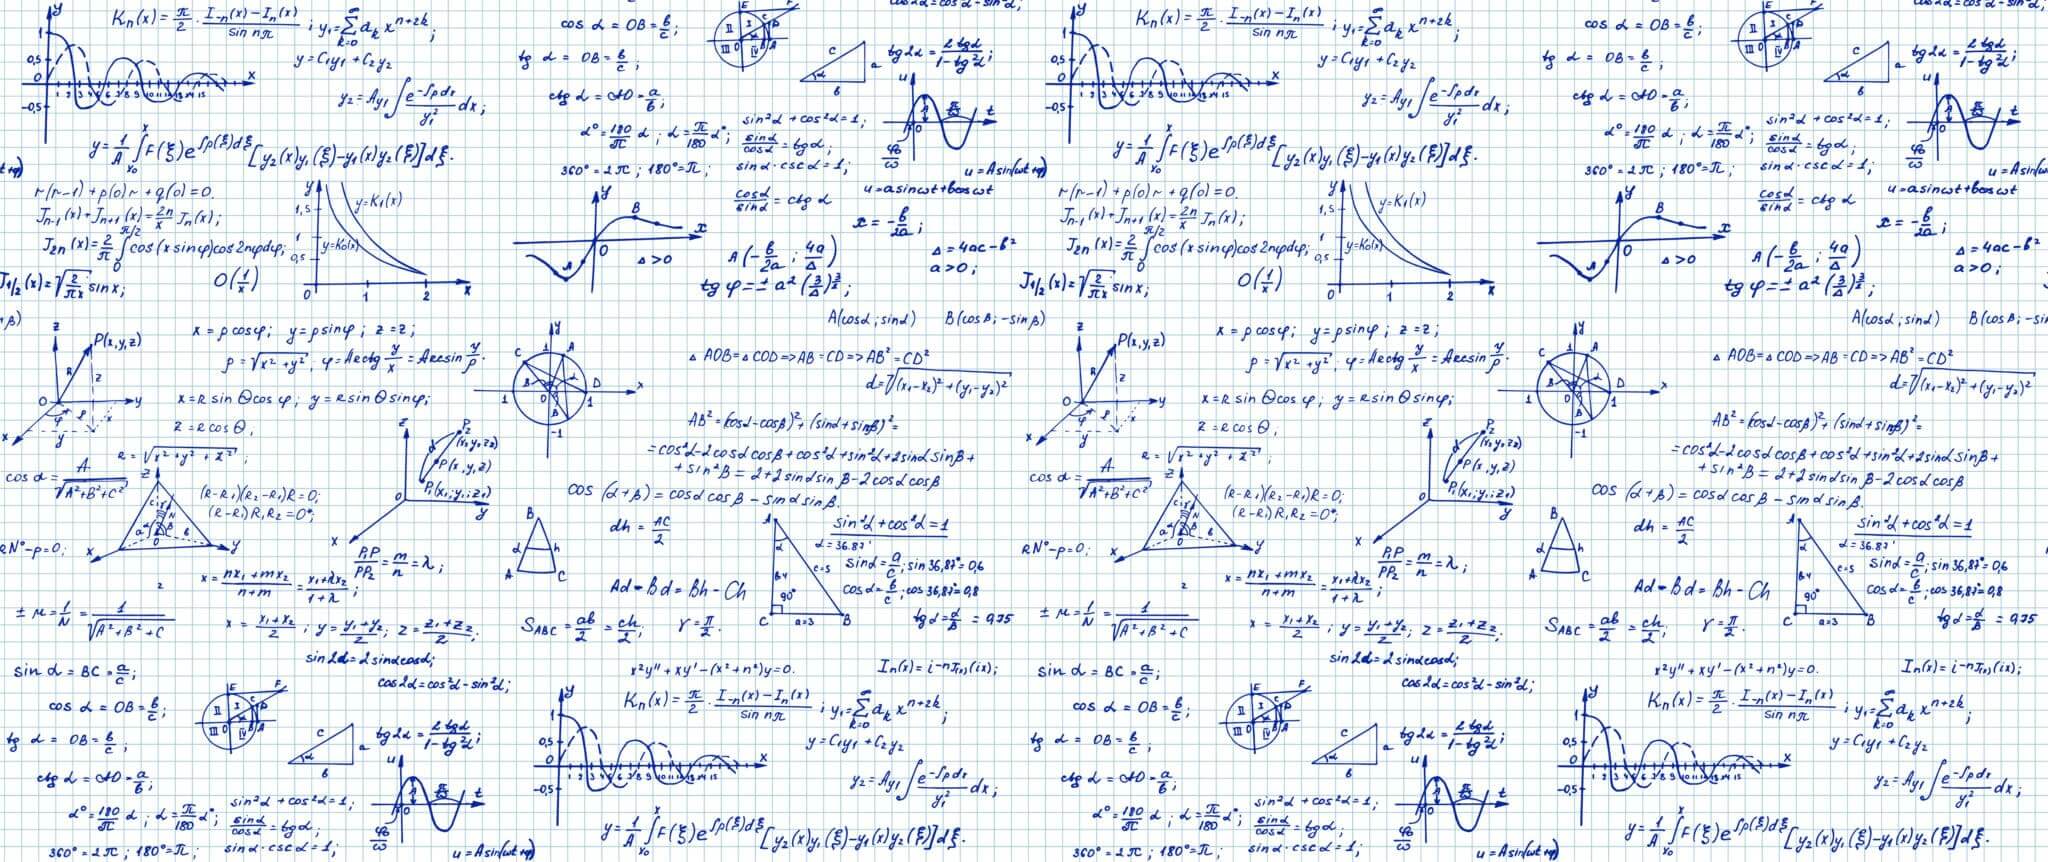 Scientific Notebooks